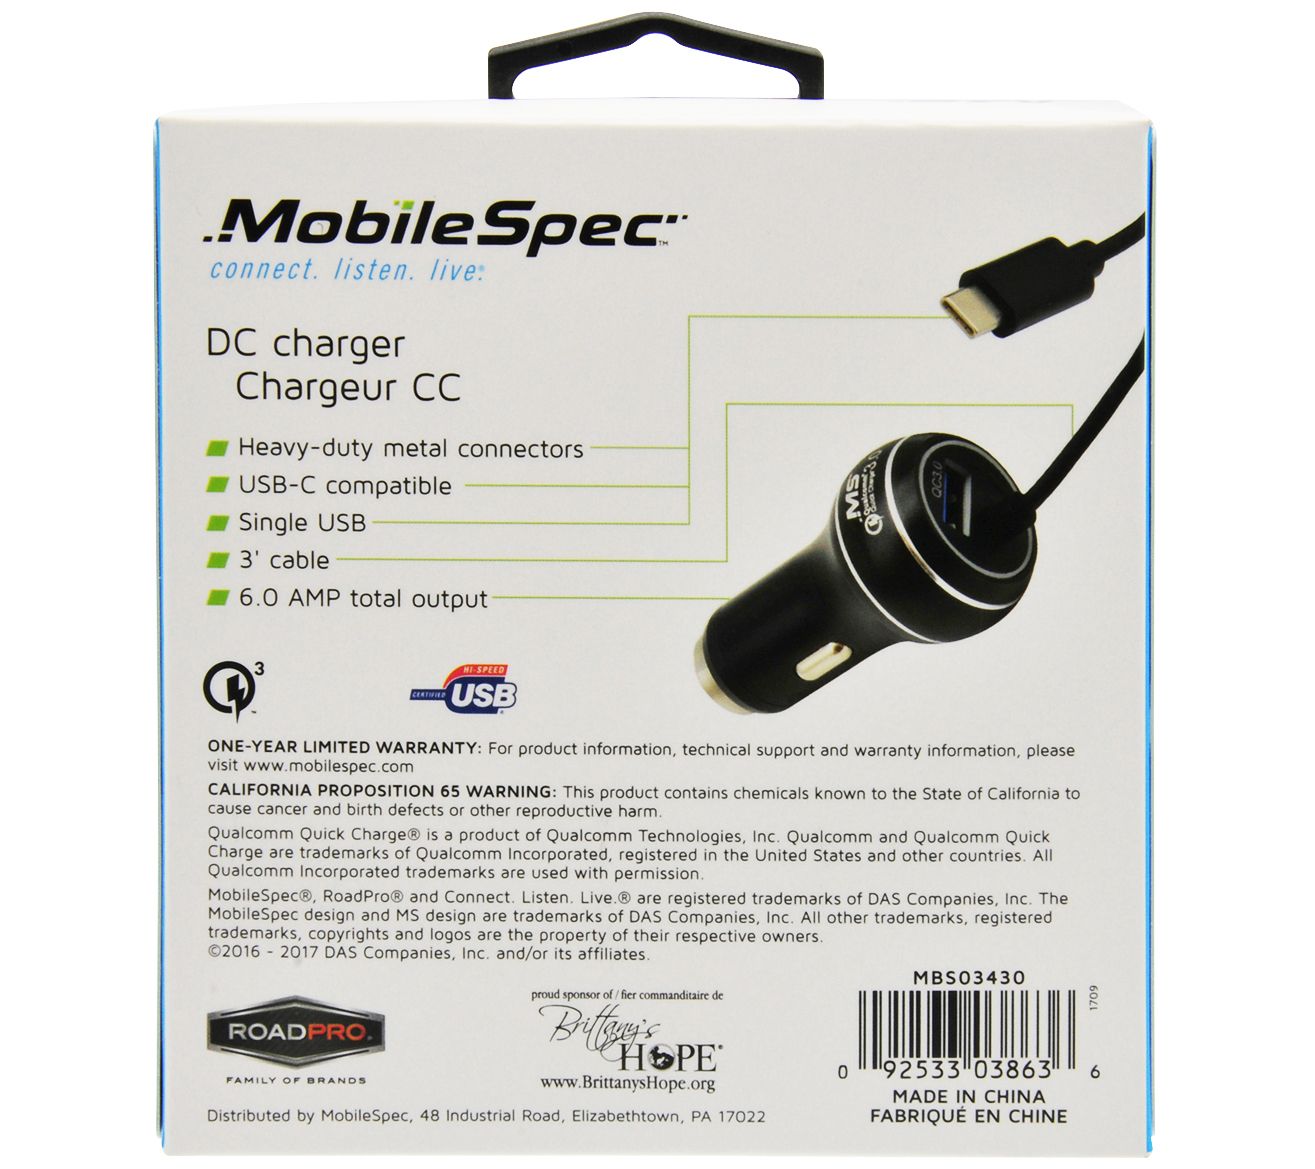 Chargeur USB pour voiture, USB-C PD et USB type A QC 3.0, 65 watts - PEARL